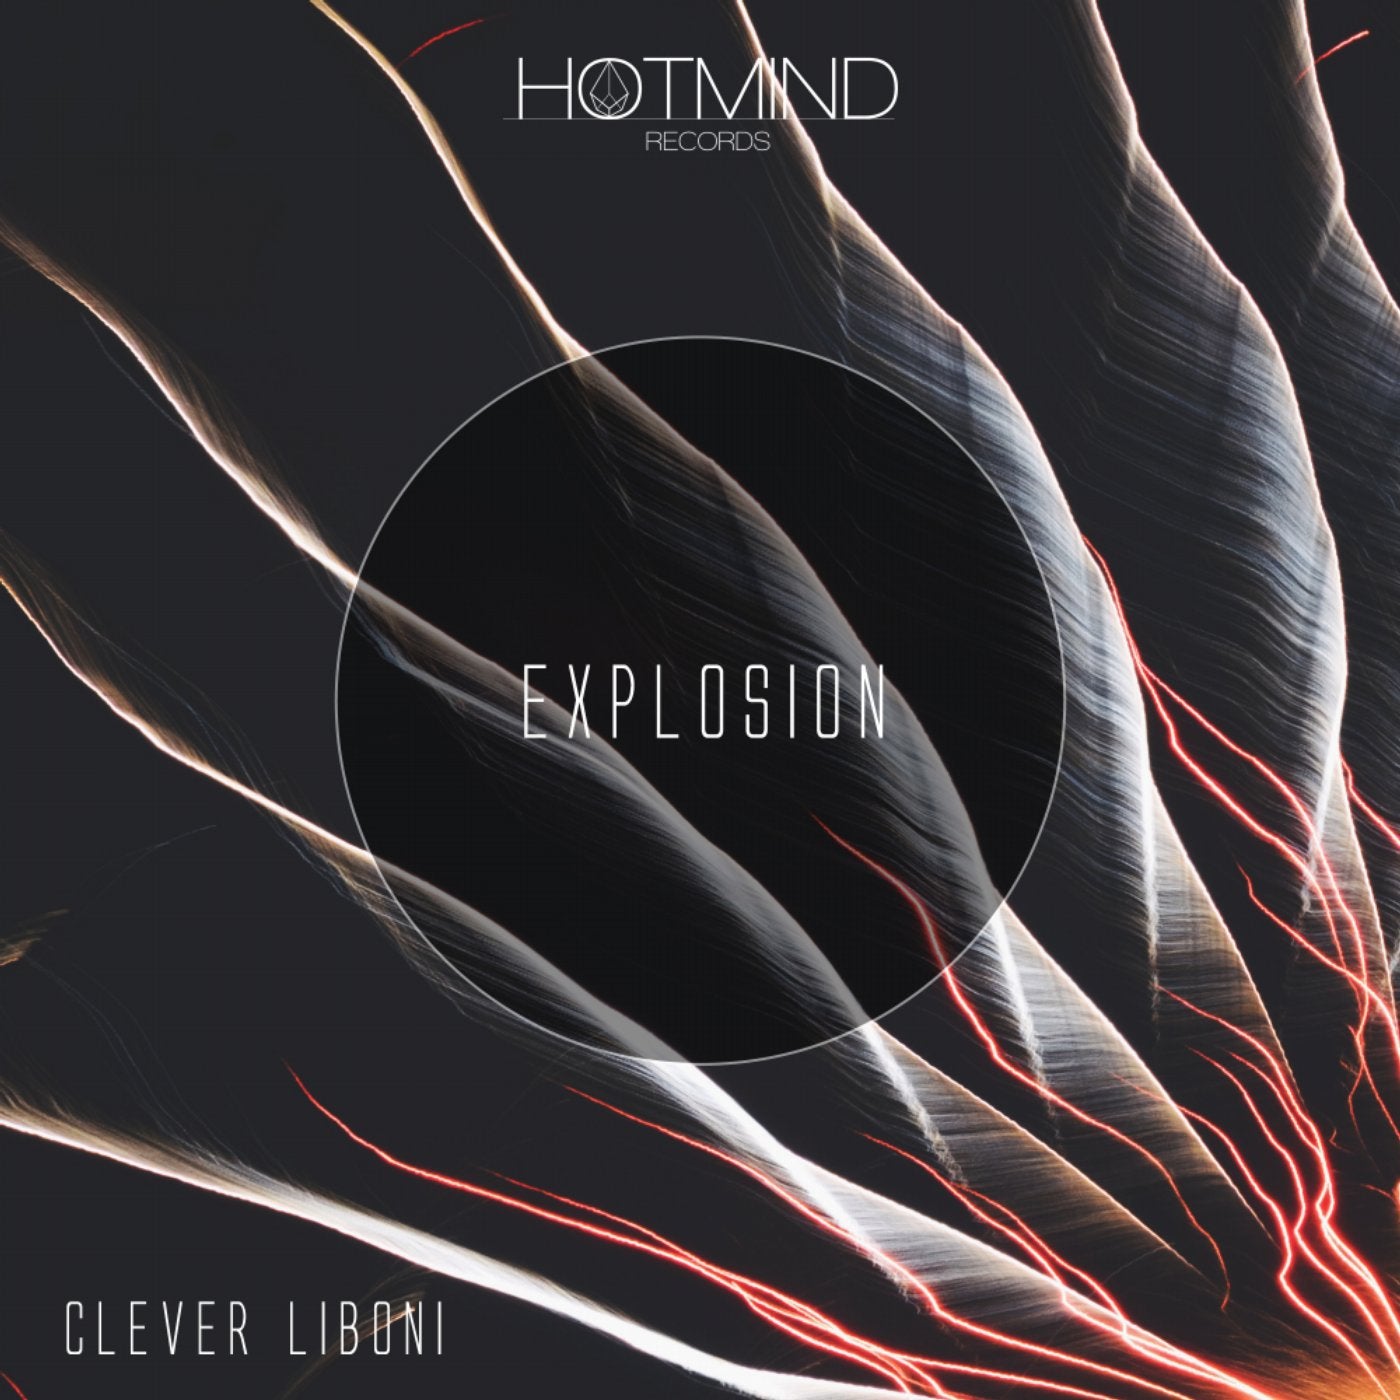 Explosion (Original Mix)